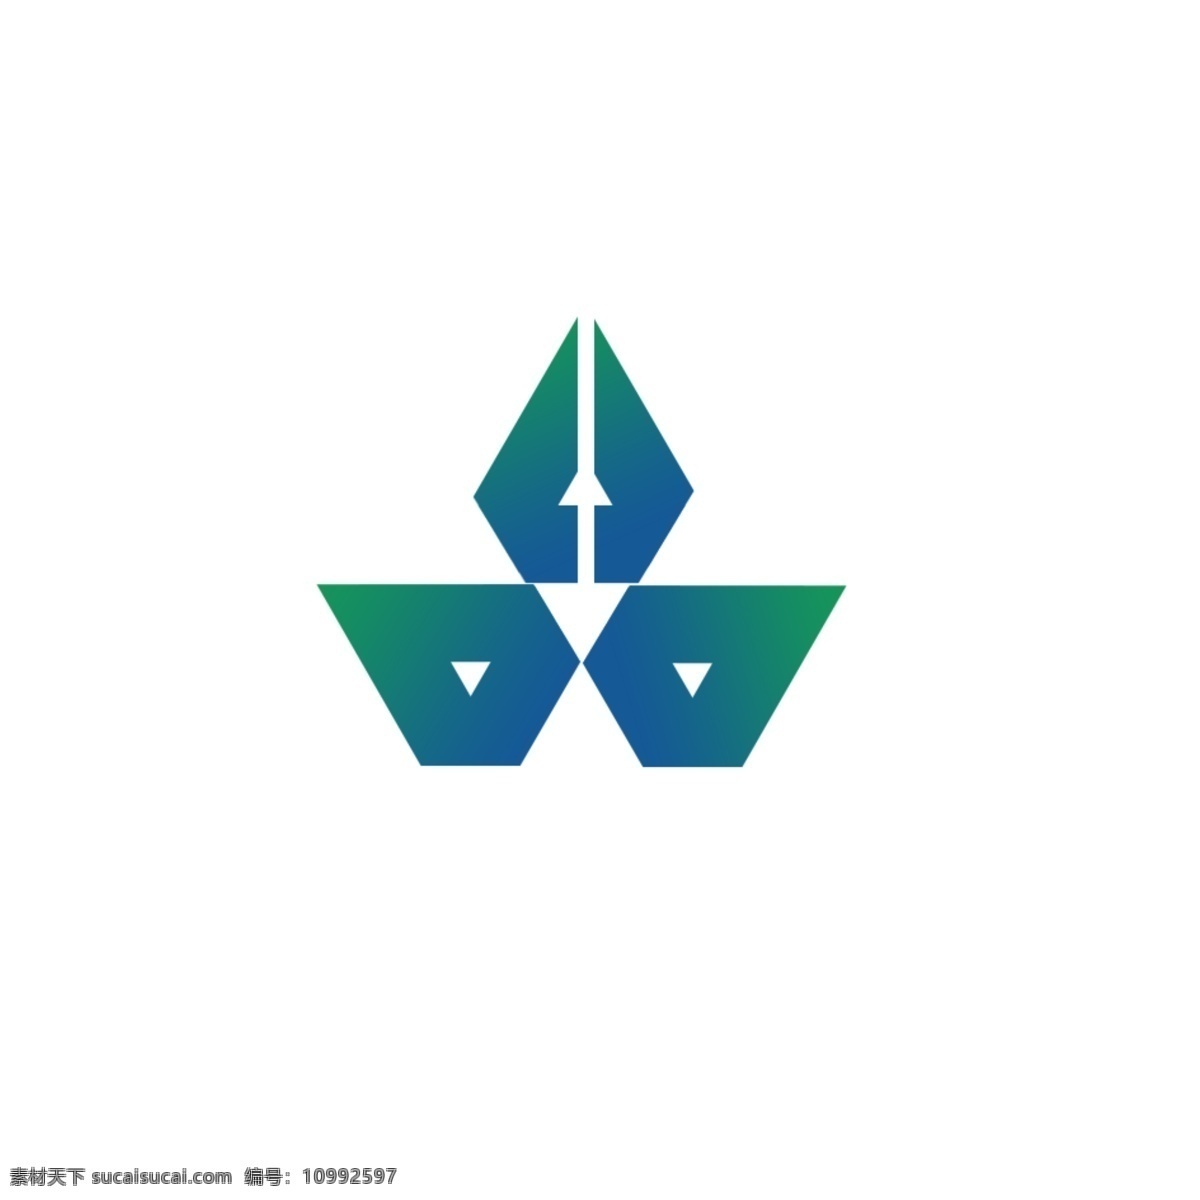 奖台 奖杯 钻石 logo 绿色 蓝色 简约 奖杯logo 钻石logo 绿色logo 蓝色logo 简约logo logo设计